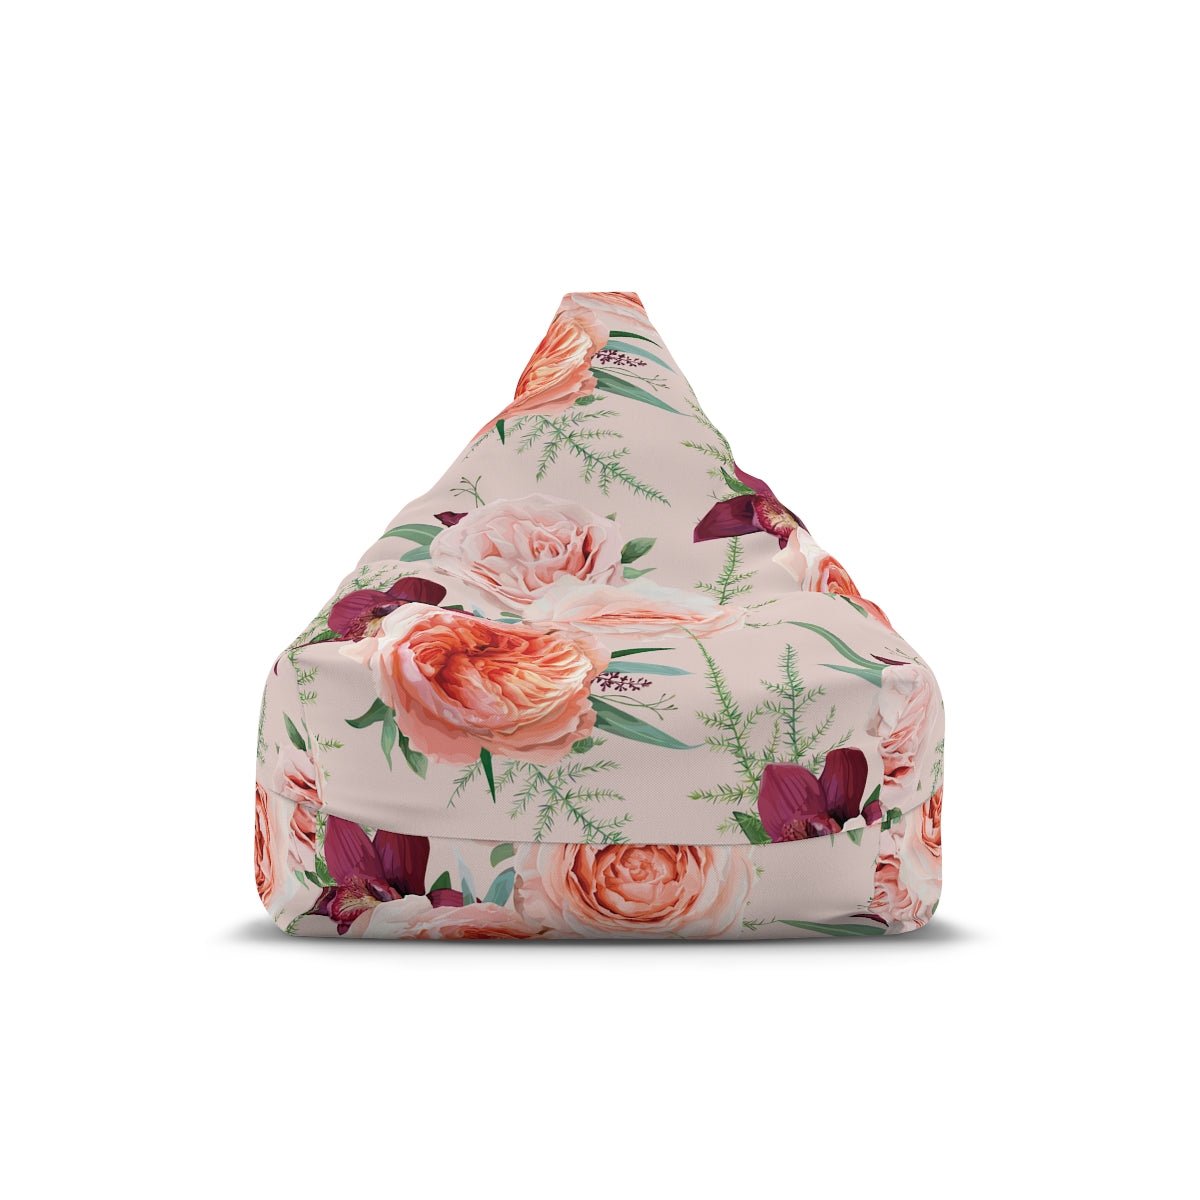 Blush Roses Bean Bag Chair Cover - Puffin Lime